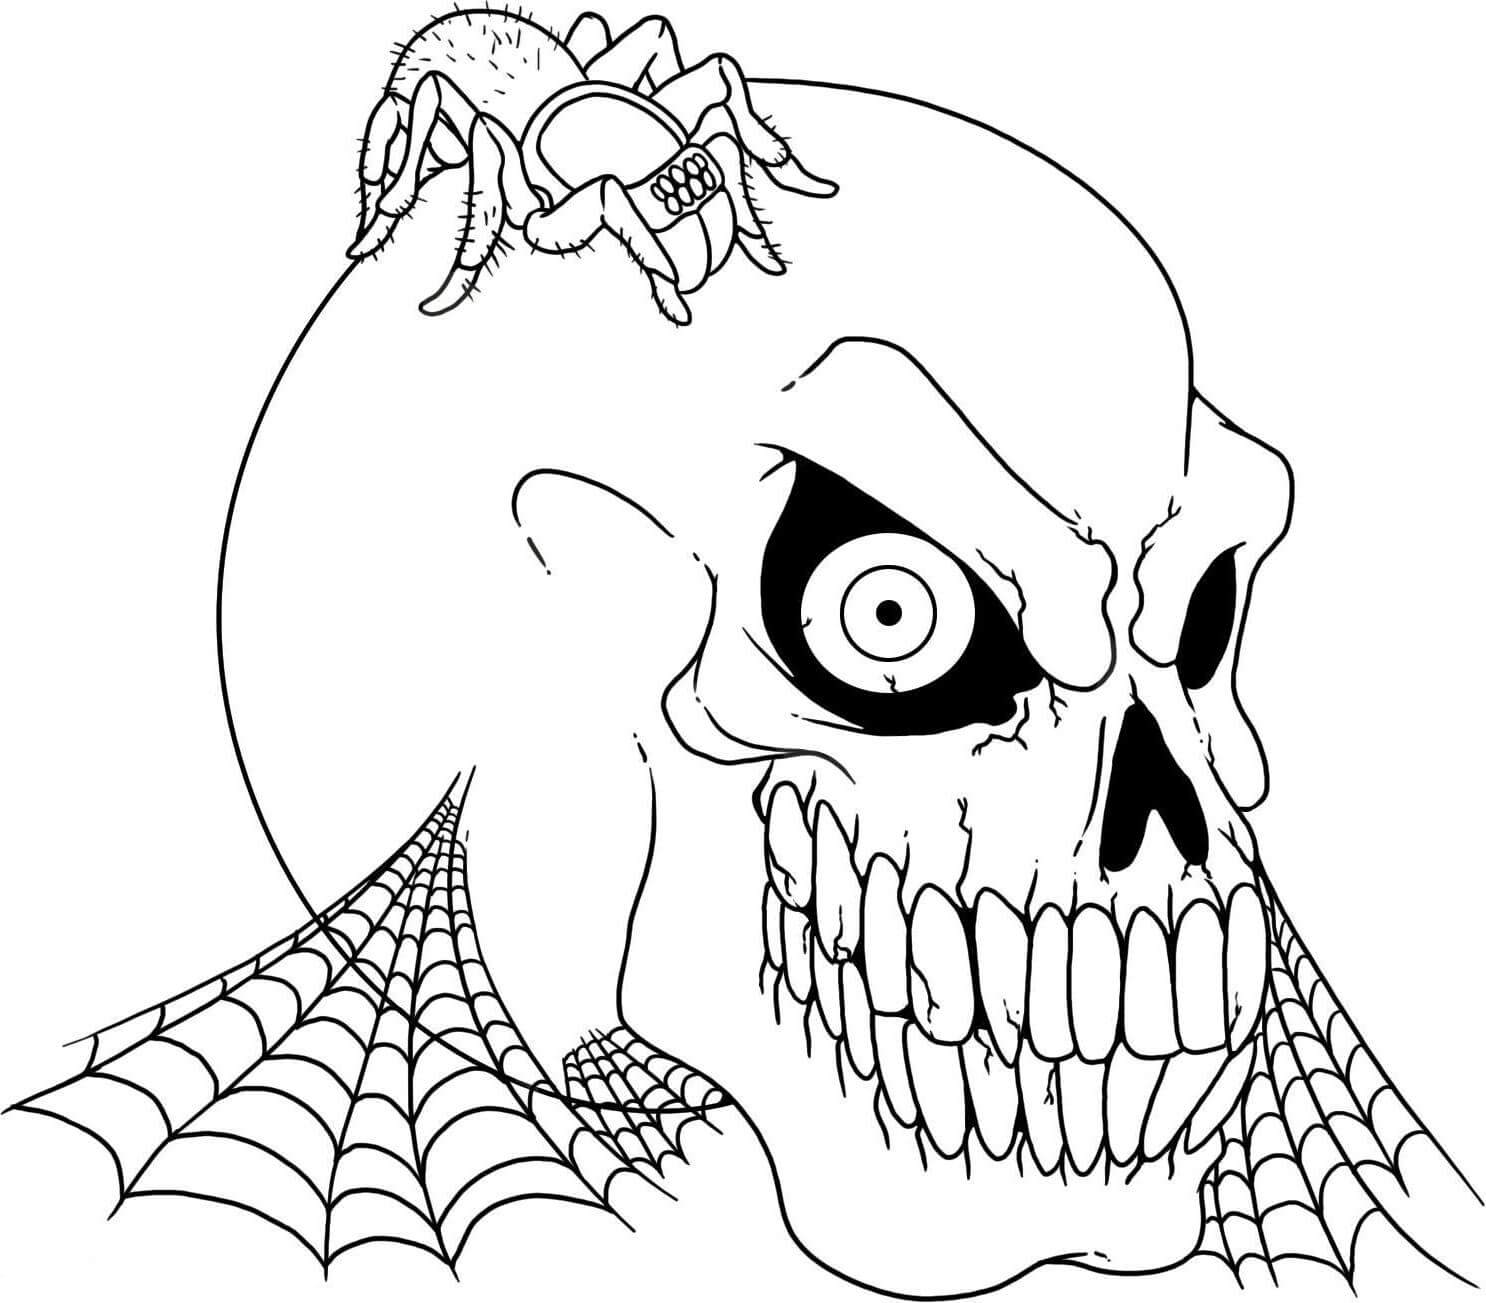 두개골 머리에 거미 coloring page